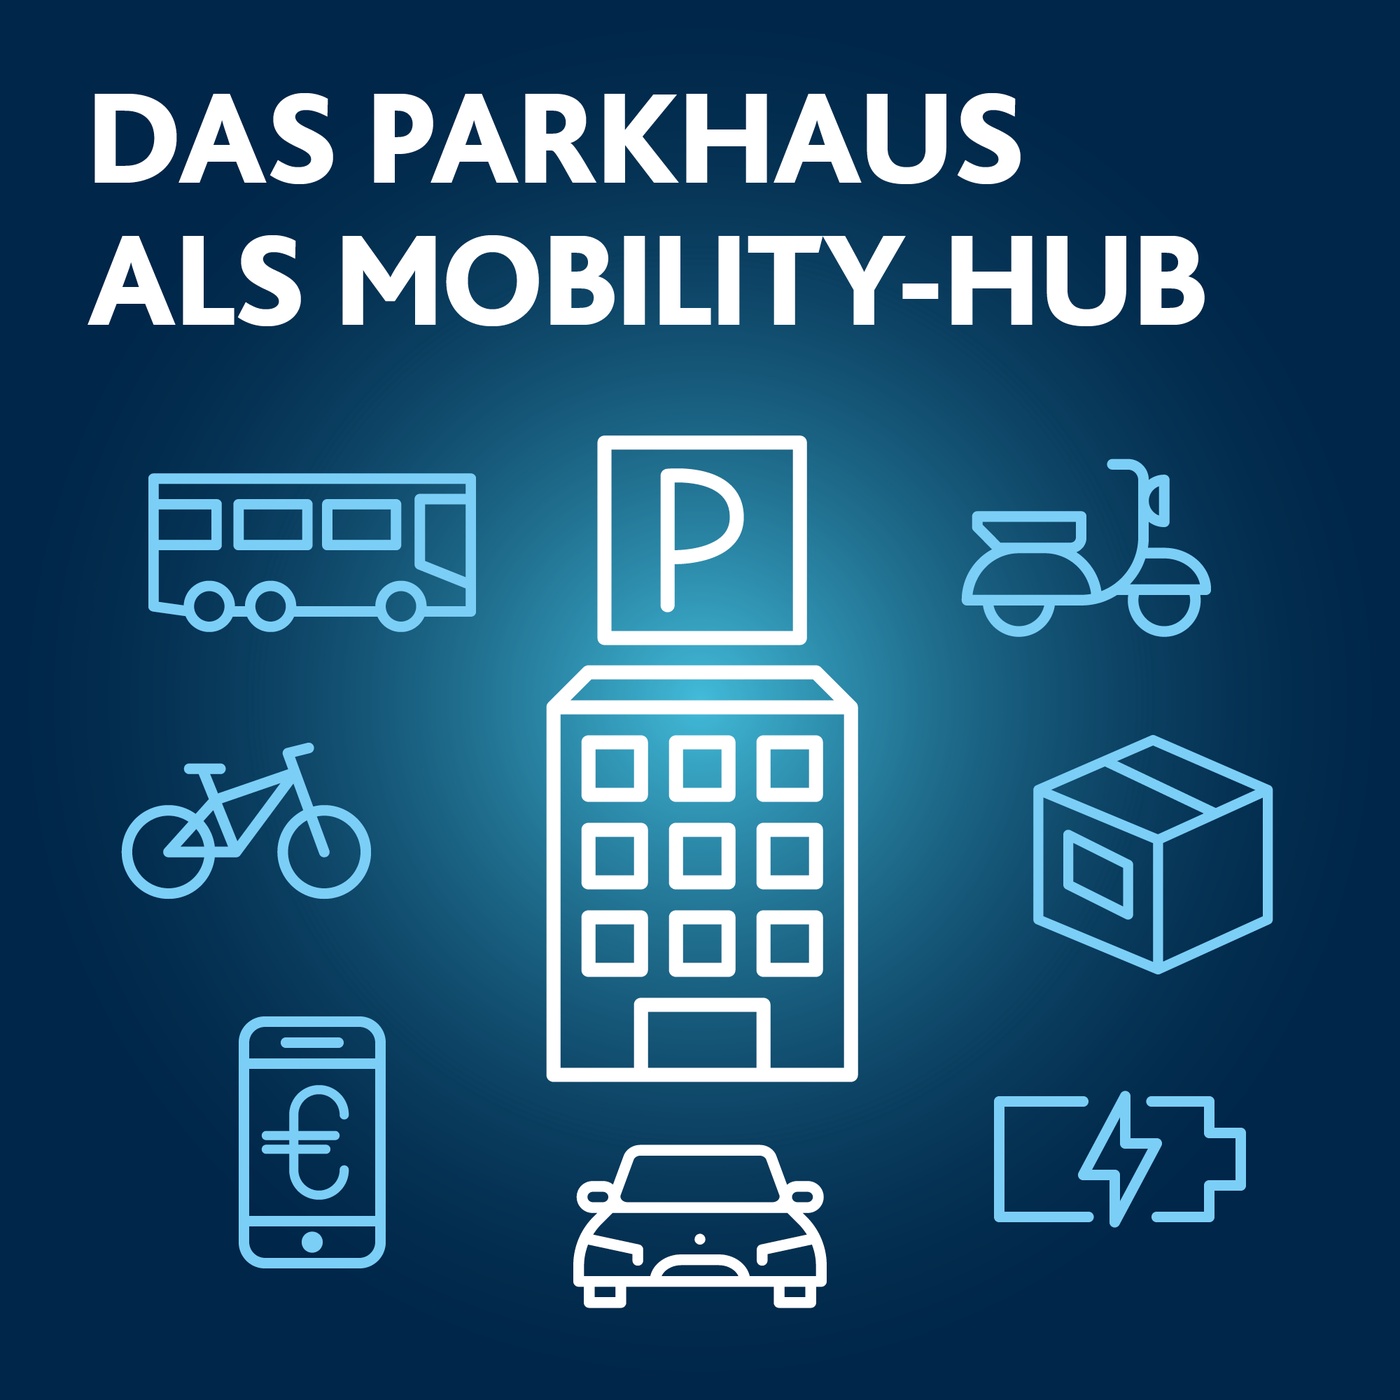 Das Parkhaus als Mobility-Hub